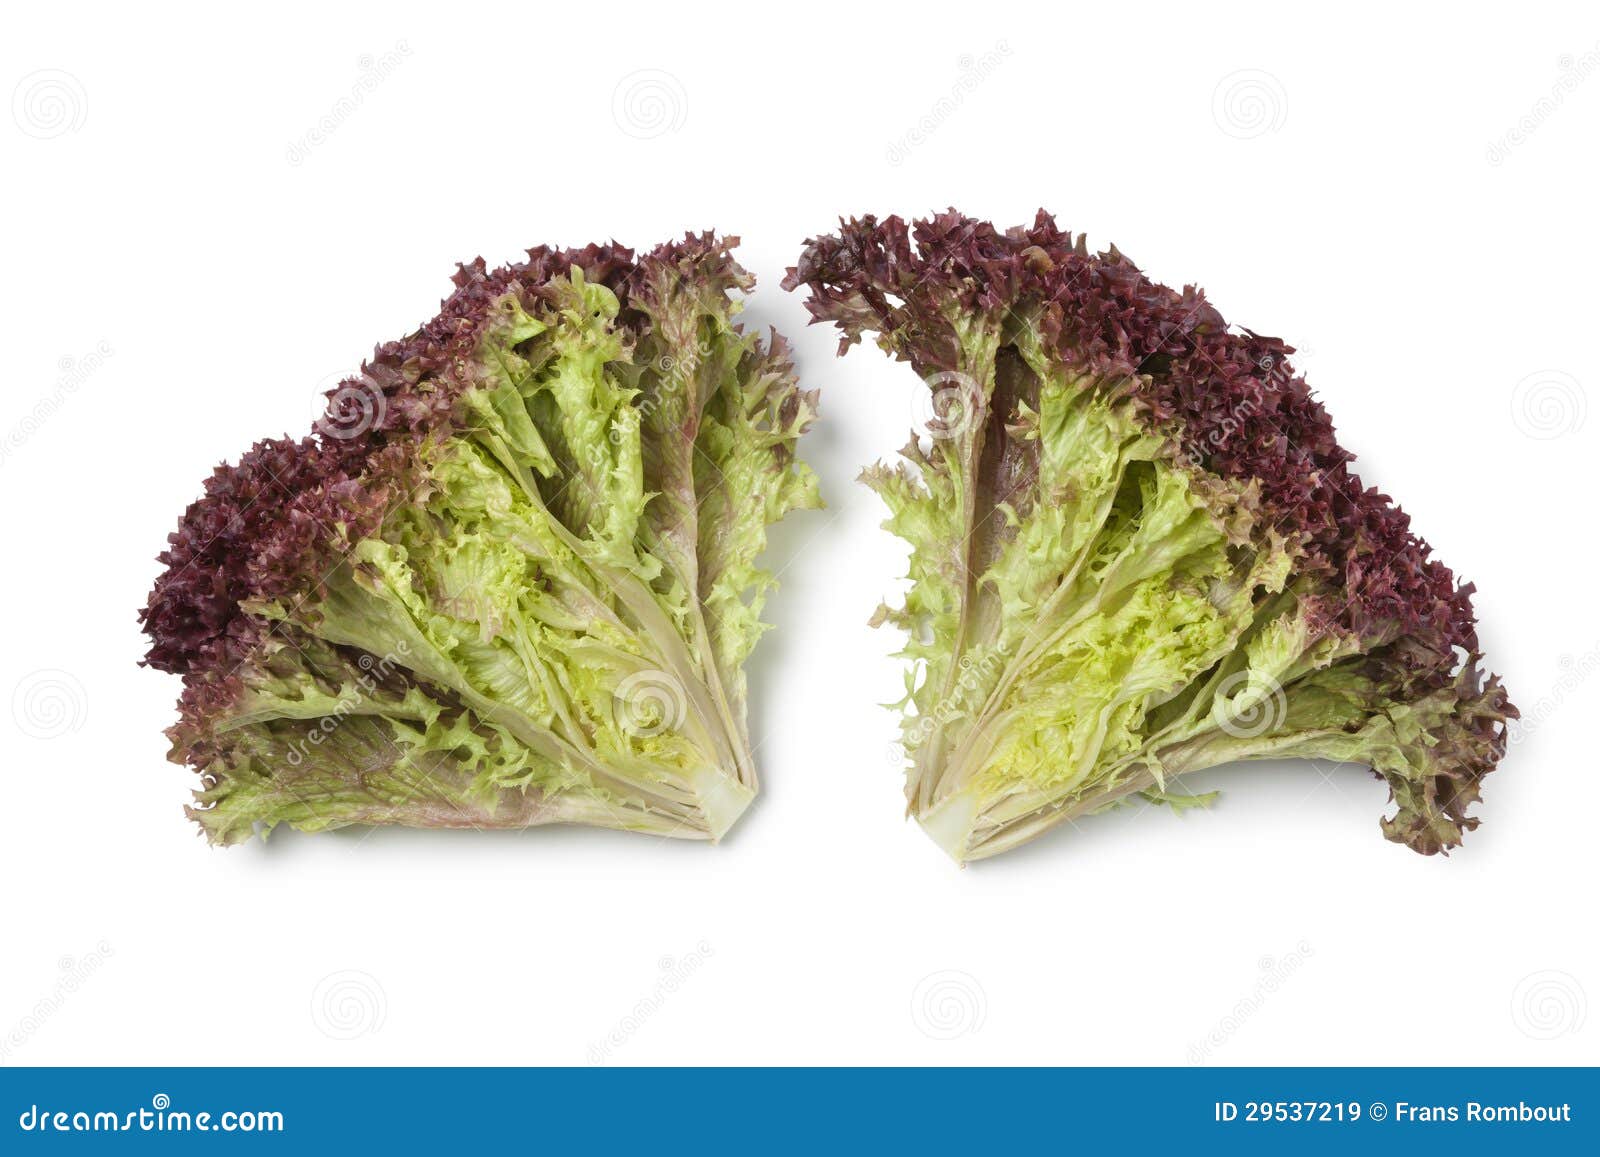 inside lollo rosso lettuce